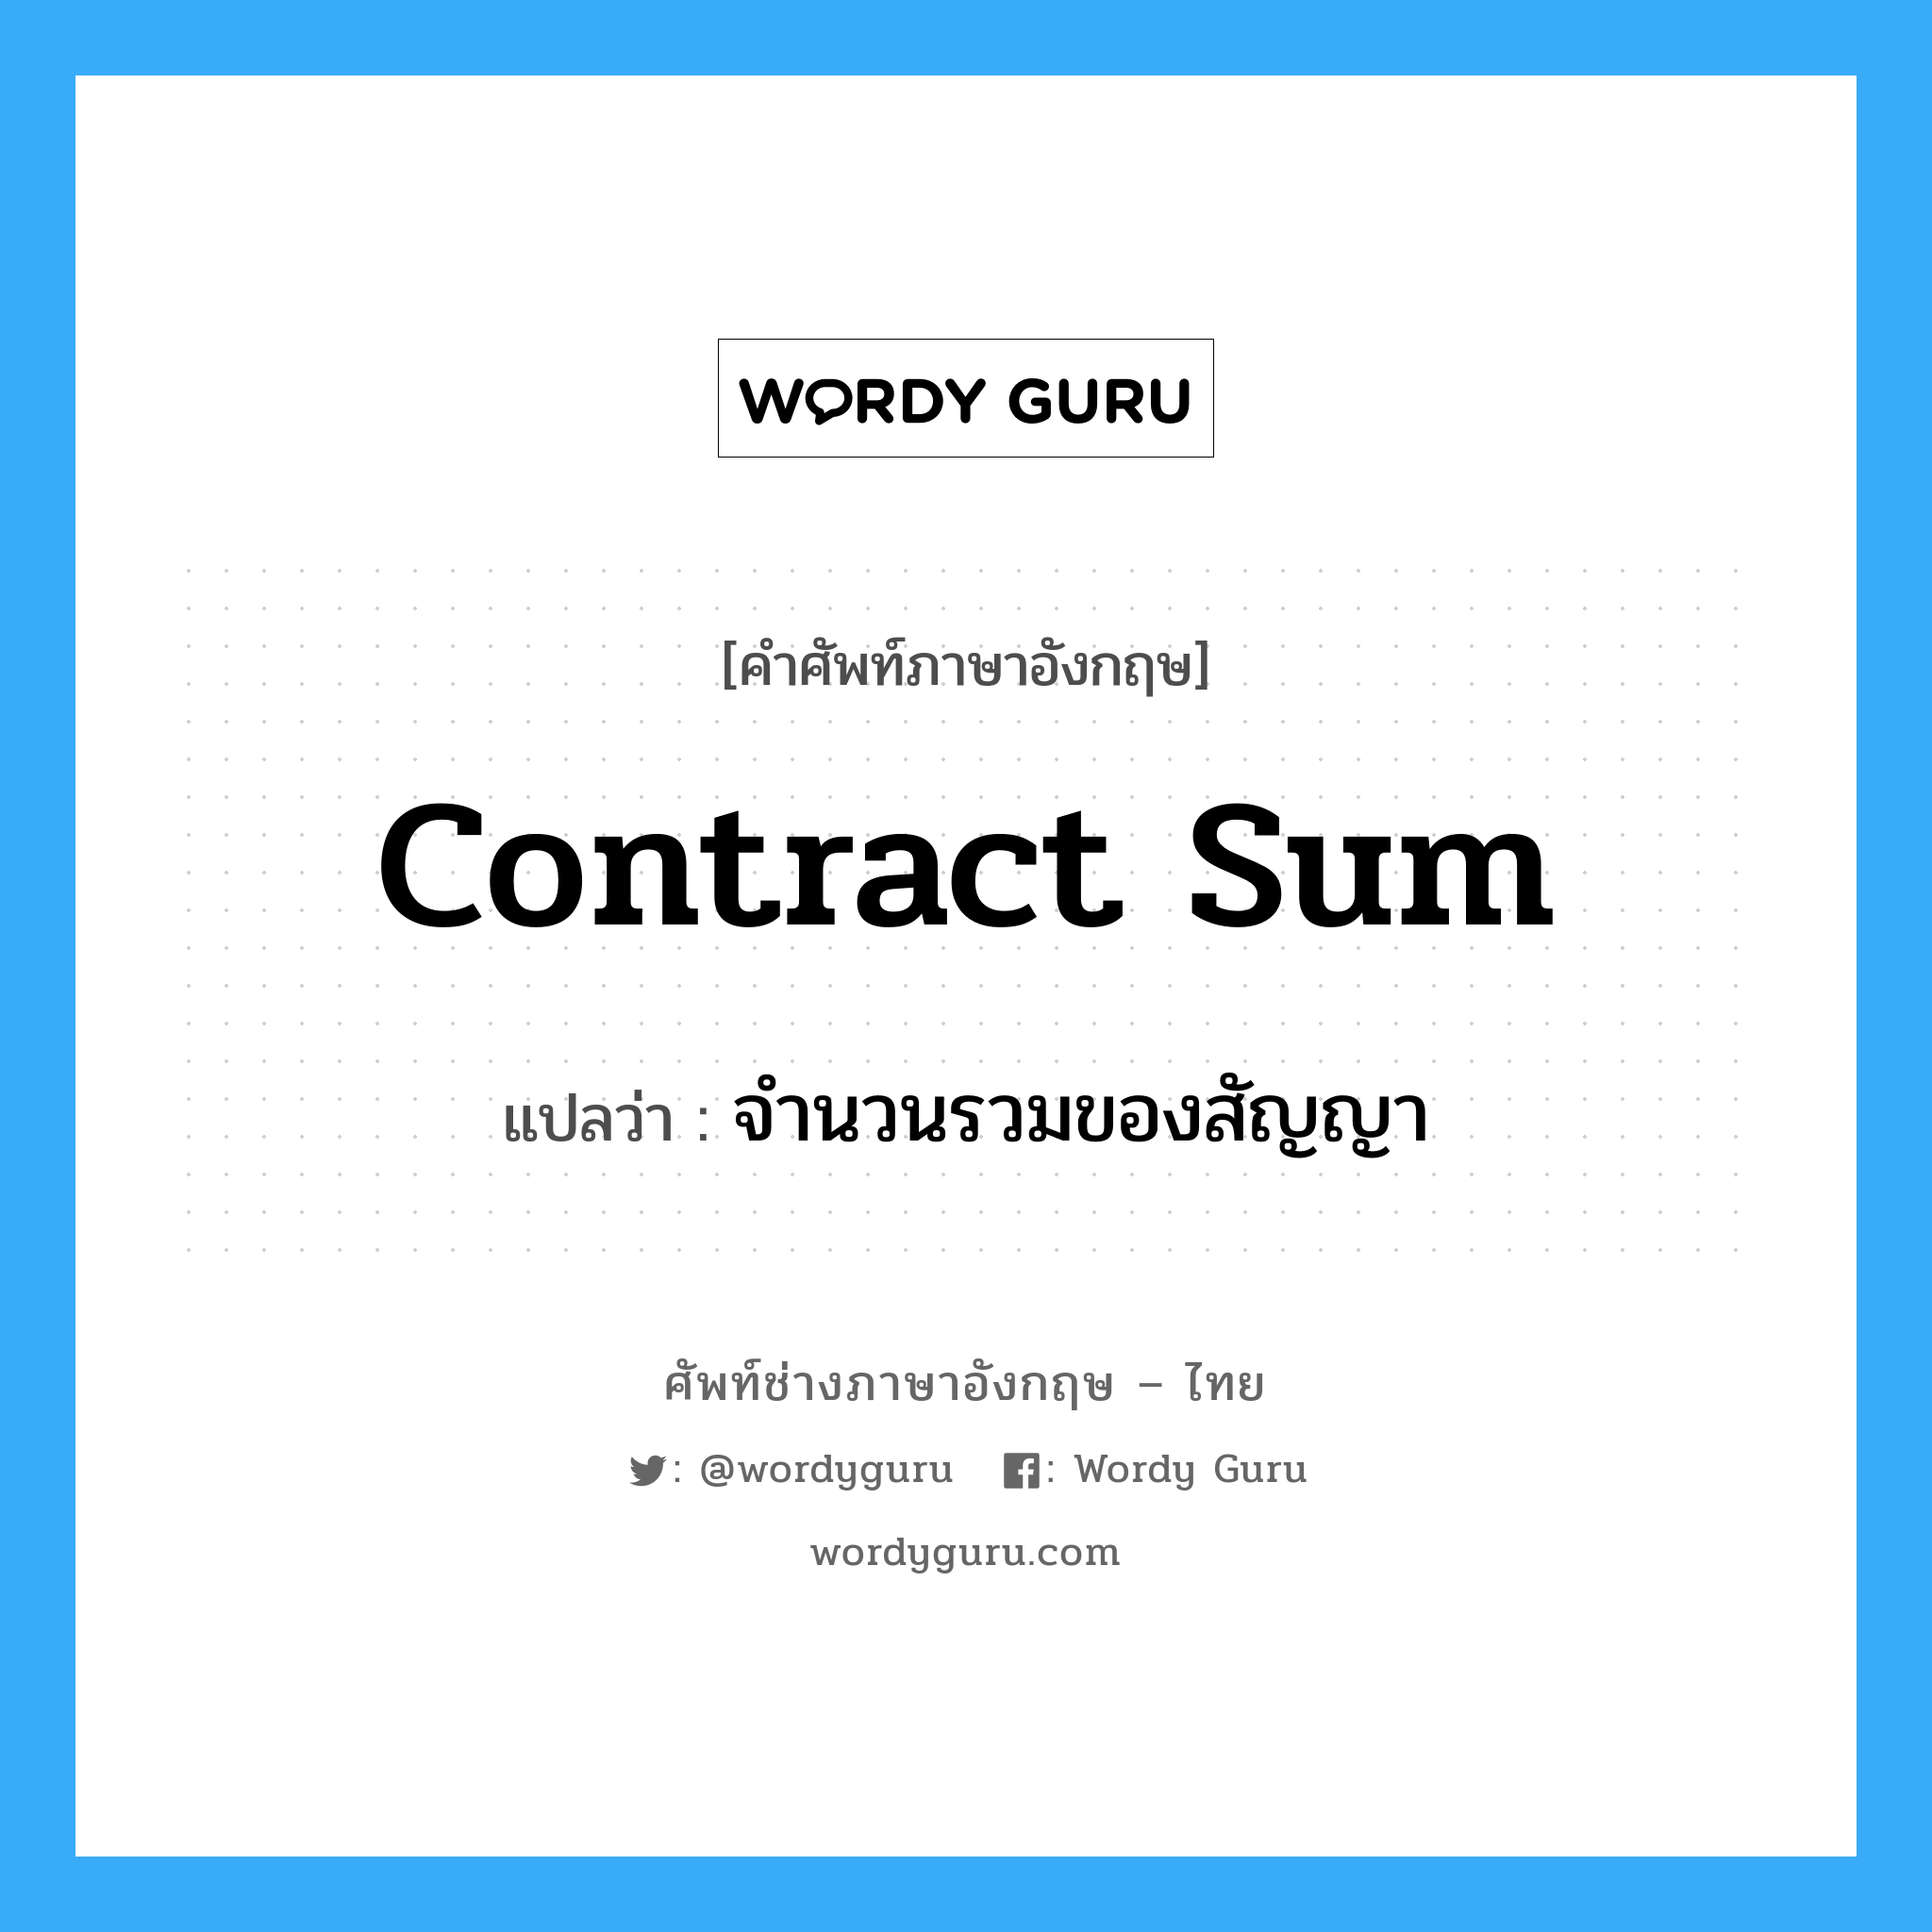 Contract Sum แปลว่า?, คำศัพท์ช่างภาษาอังกฤษ - ไทย Contract Sum คำศัพท์ภาษาอังกฤษ Contract Sum แปลว่า จำนวนรวมของสัญญา